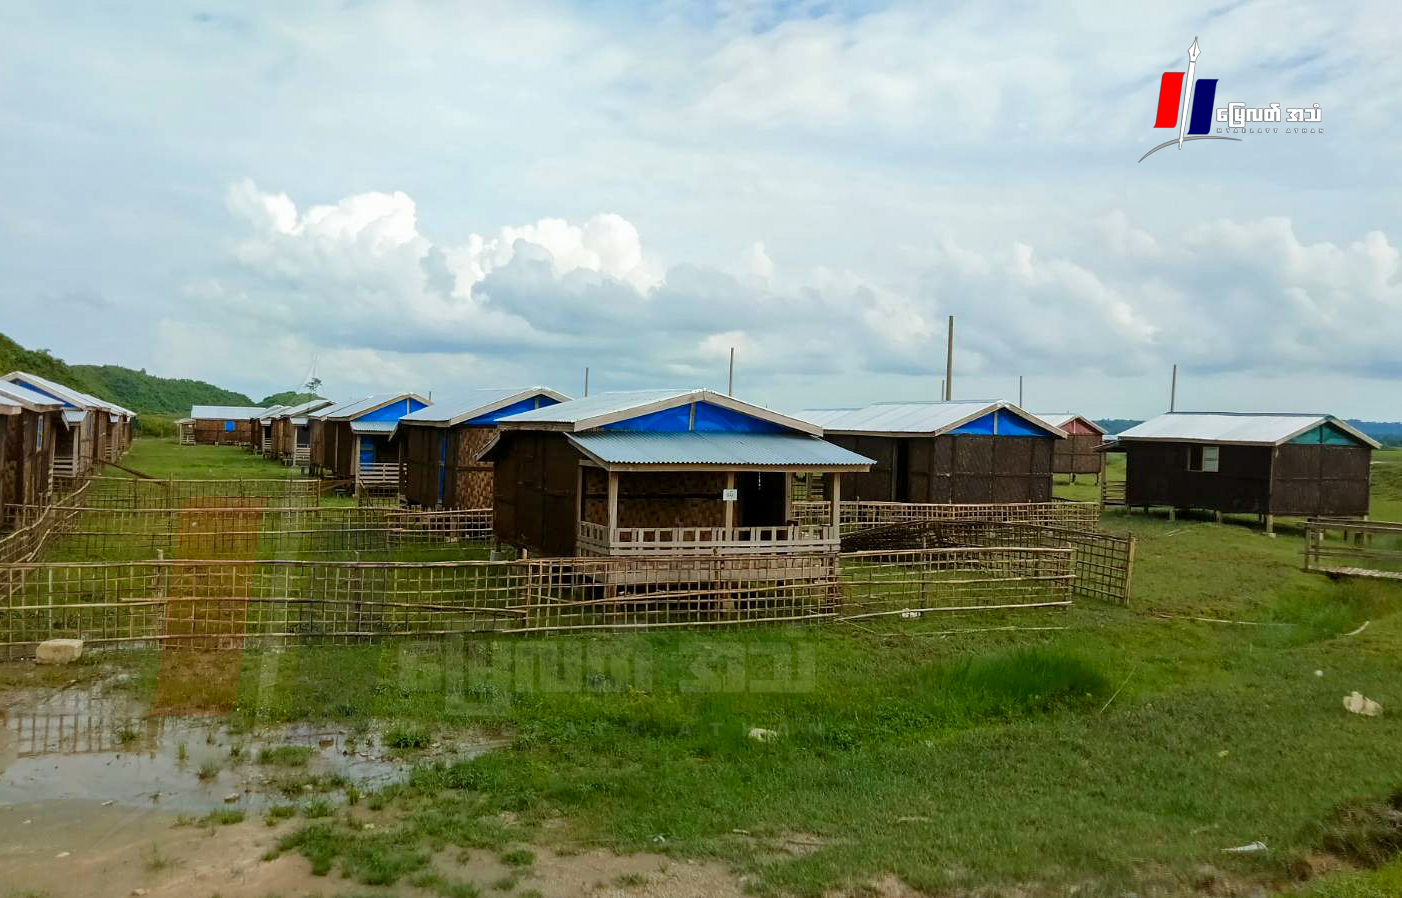 ဒုက္ခသည်စခန်းရေမြုပ်လို့ အသစ်ဆောက်ပေးခဲ့တဲ့ စခန်းအသစ်နေရာမှာလည်း ရေမြုပ်နေဆဲဖြစ်